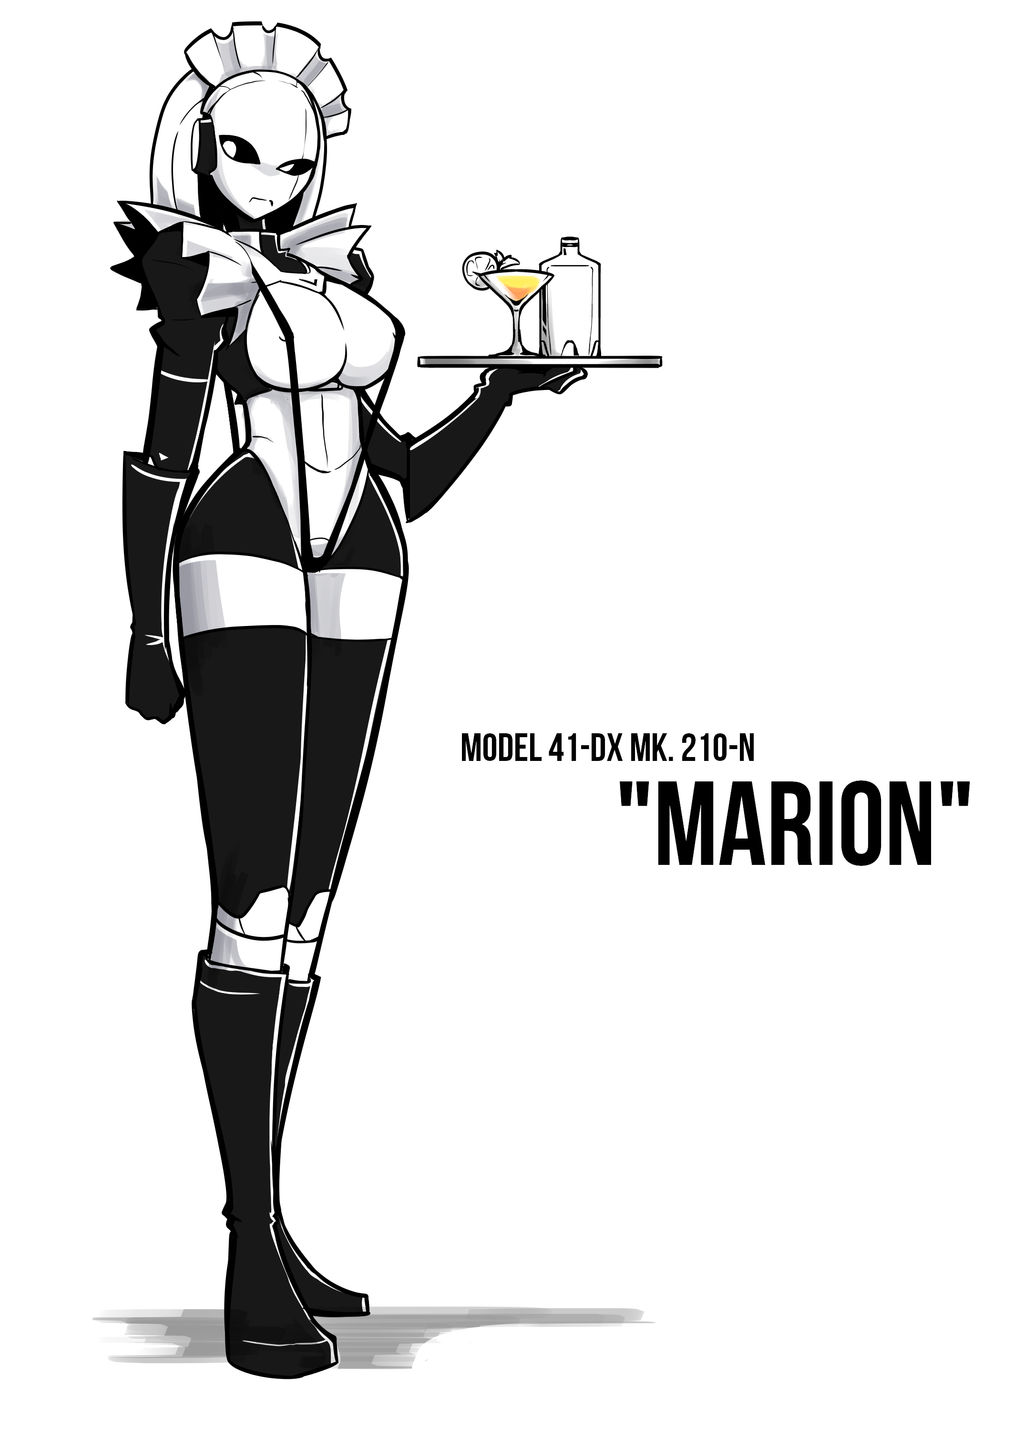 Marion the Robot Maid by BlackboltLonewolf on DeviantArt